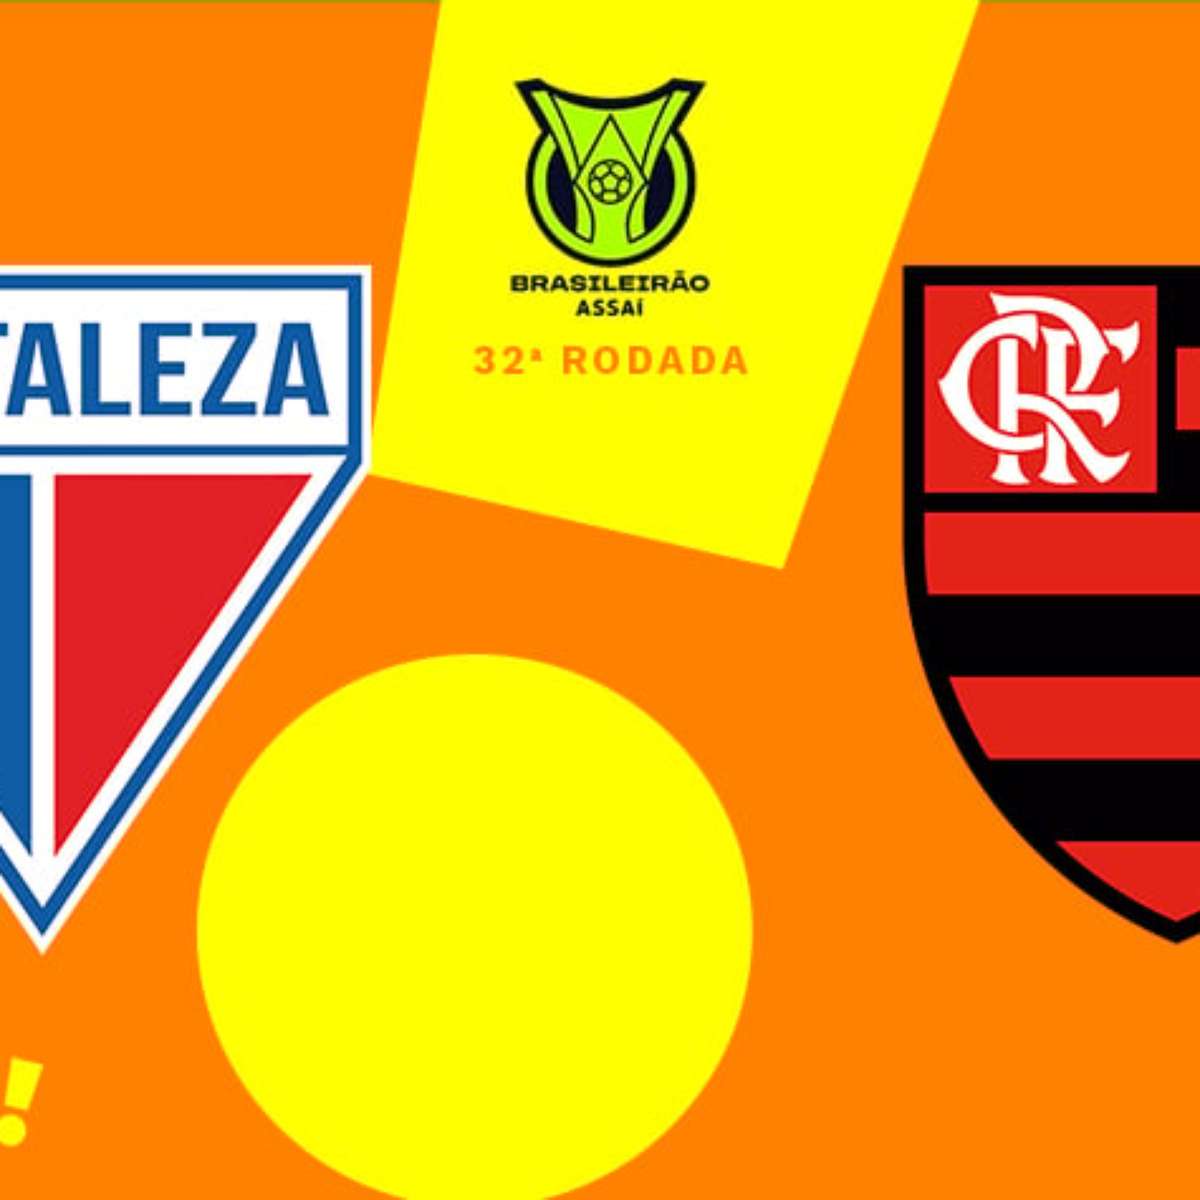 Fortaleza x Flamengo: onde assistir, horários e escalações pelo Brasileirão